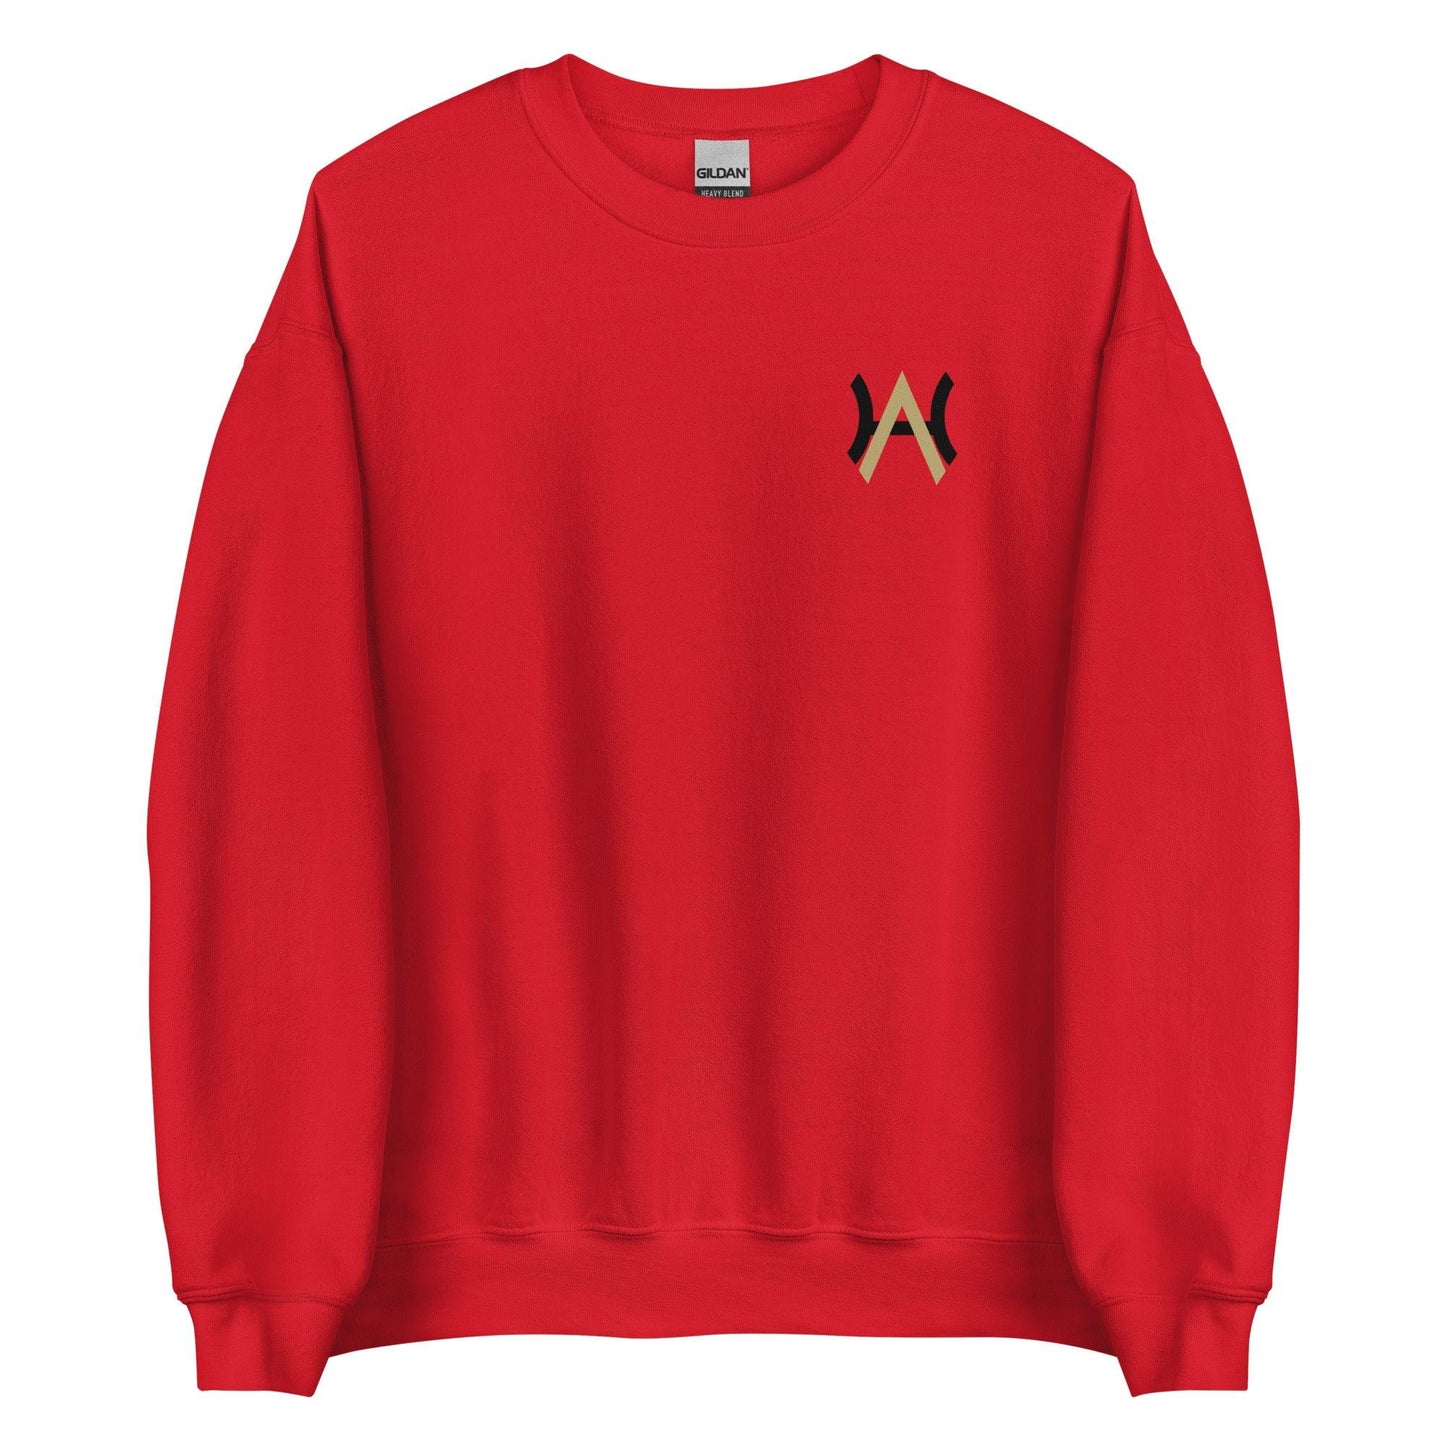 Andrew Harris "Essential" Sweatshirt - Fan Arch